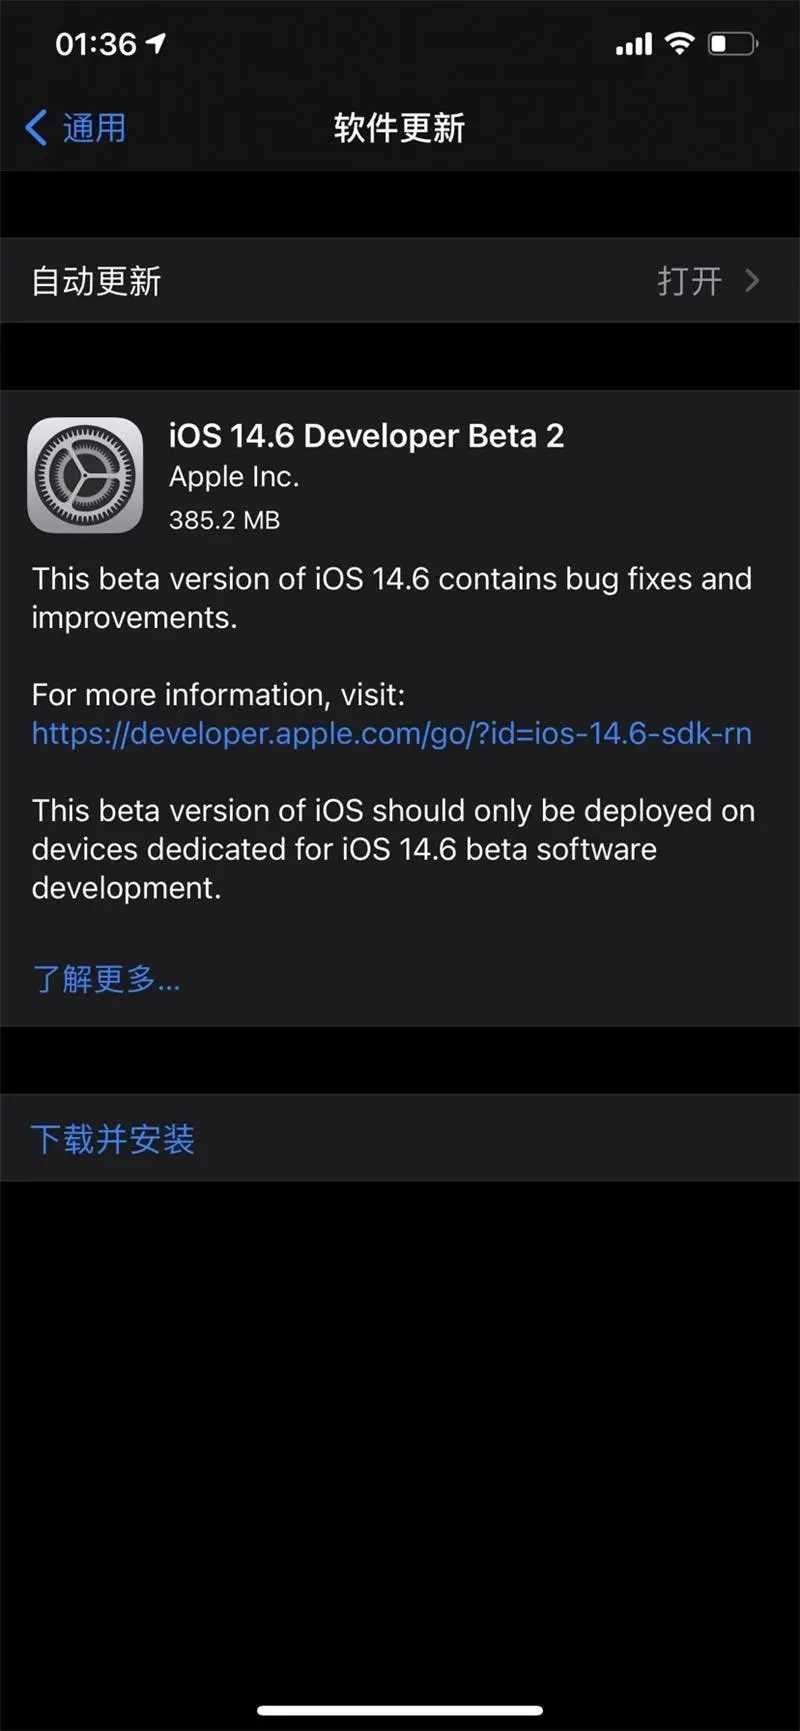 نسخه بتا iOS ۱۴.۶